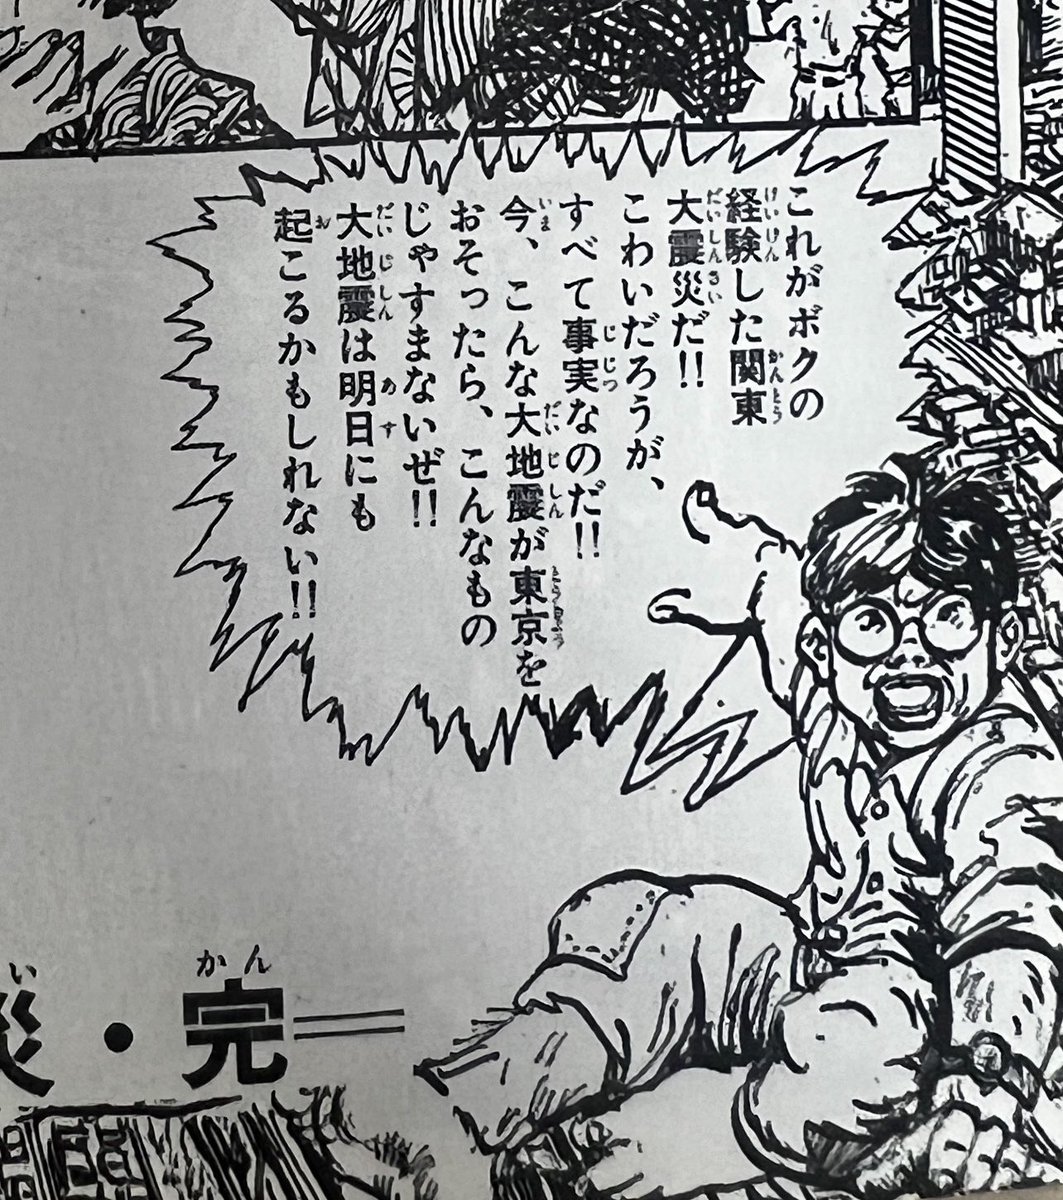 【書店員様へ】再来月の9月1日は関東大震災100周年。震災を8歳のころ体験した画家・小松崎茂が、記憶を元に描いた漫画があります。もしも防災フェアか何かあるときは置いて下さい、よろしくお願いします!
『現代マンガ選集 恐怖と奇想』(ちくま文庫、川勝徳重編)
https://t.co/J7xDlqNpAp 